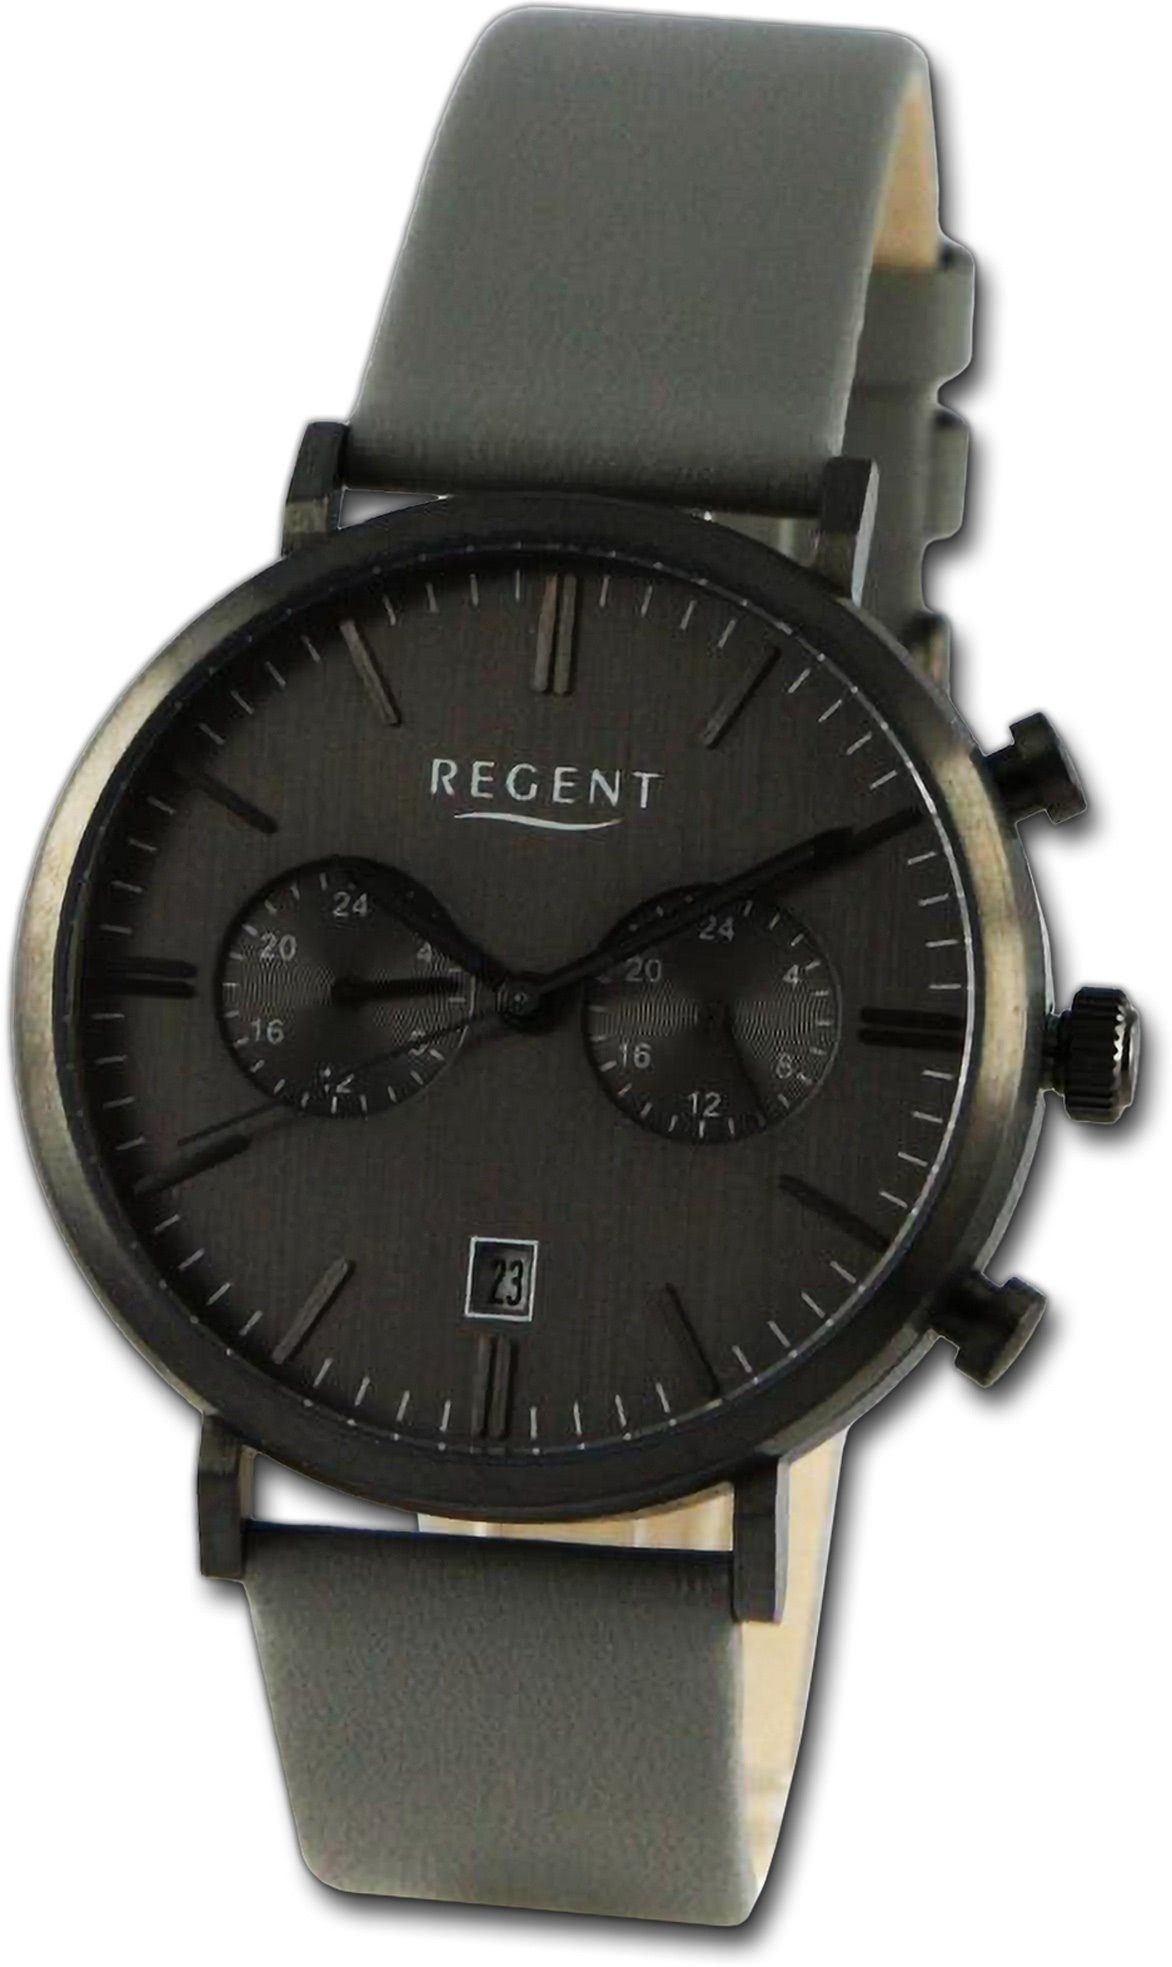 Regent Quarzuhr Regent Herren (ca. Gehäuse, Lederarmband Herrenuhr dunkelgrau, Analog, groß 41mm) rundes Armbanduhr